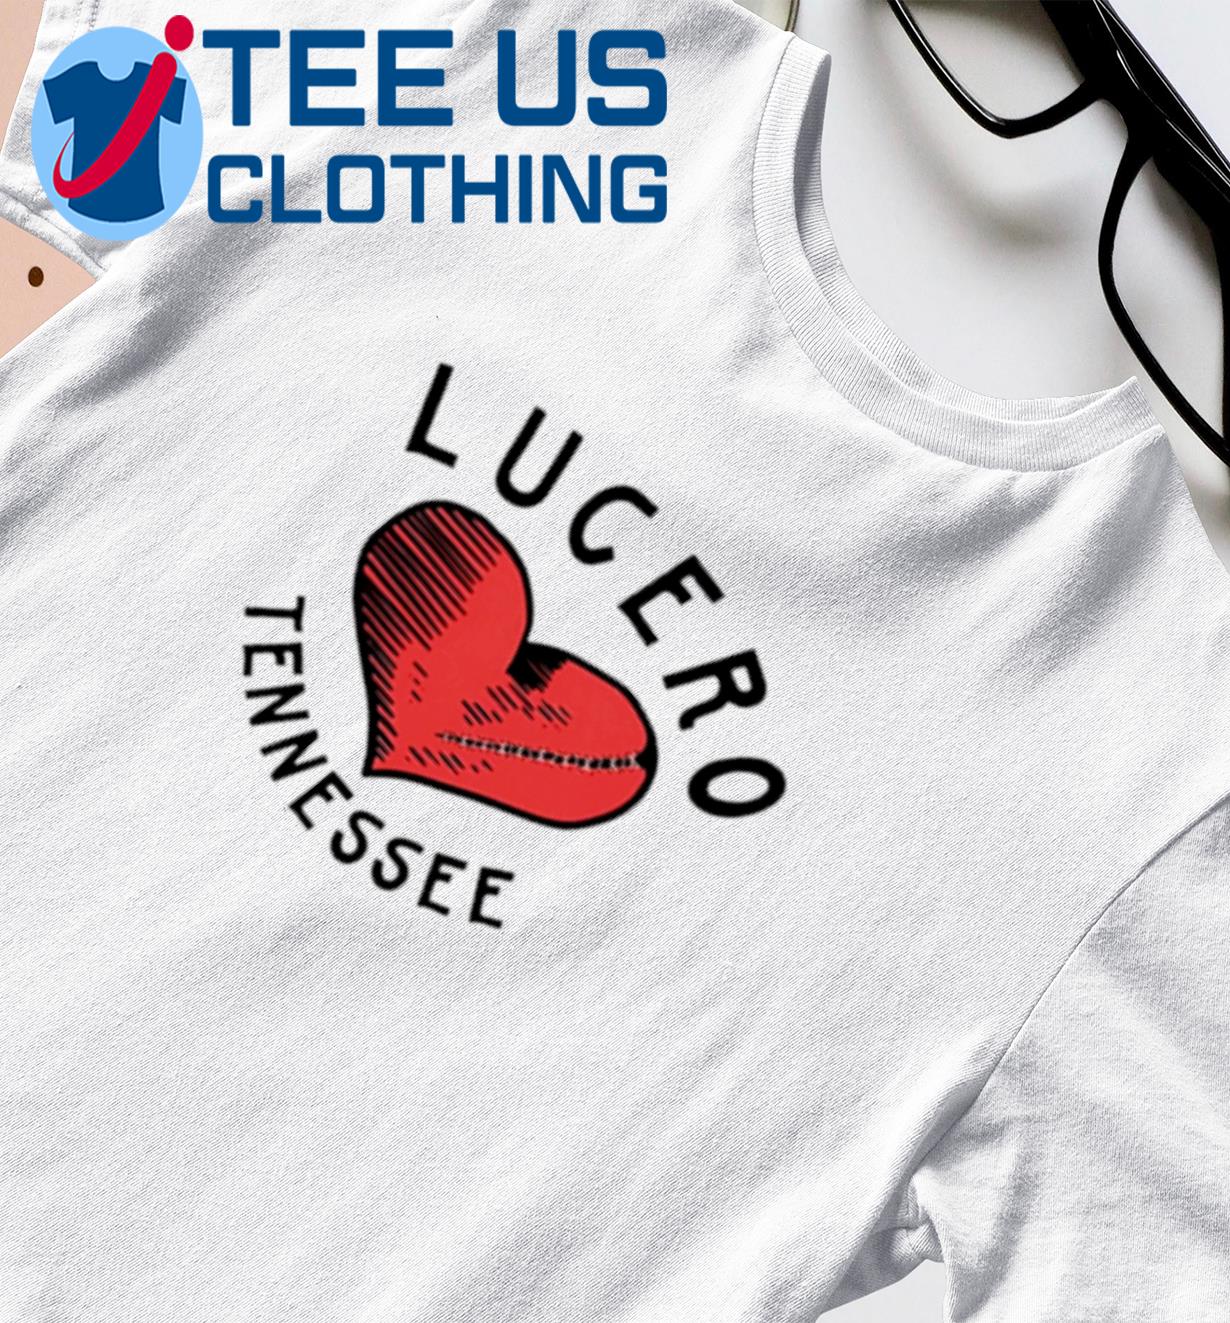 Lucero Tennessee broken heart shirt